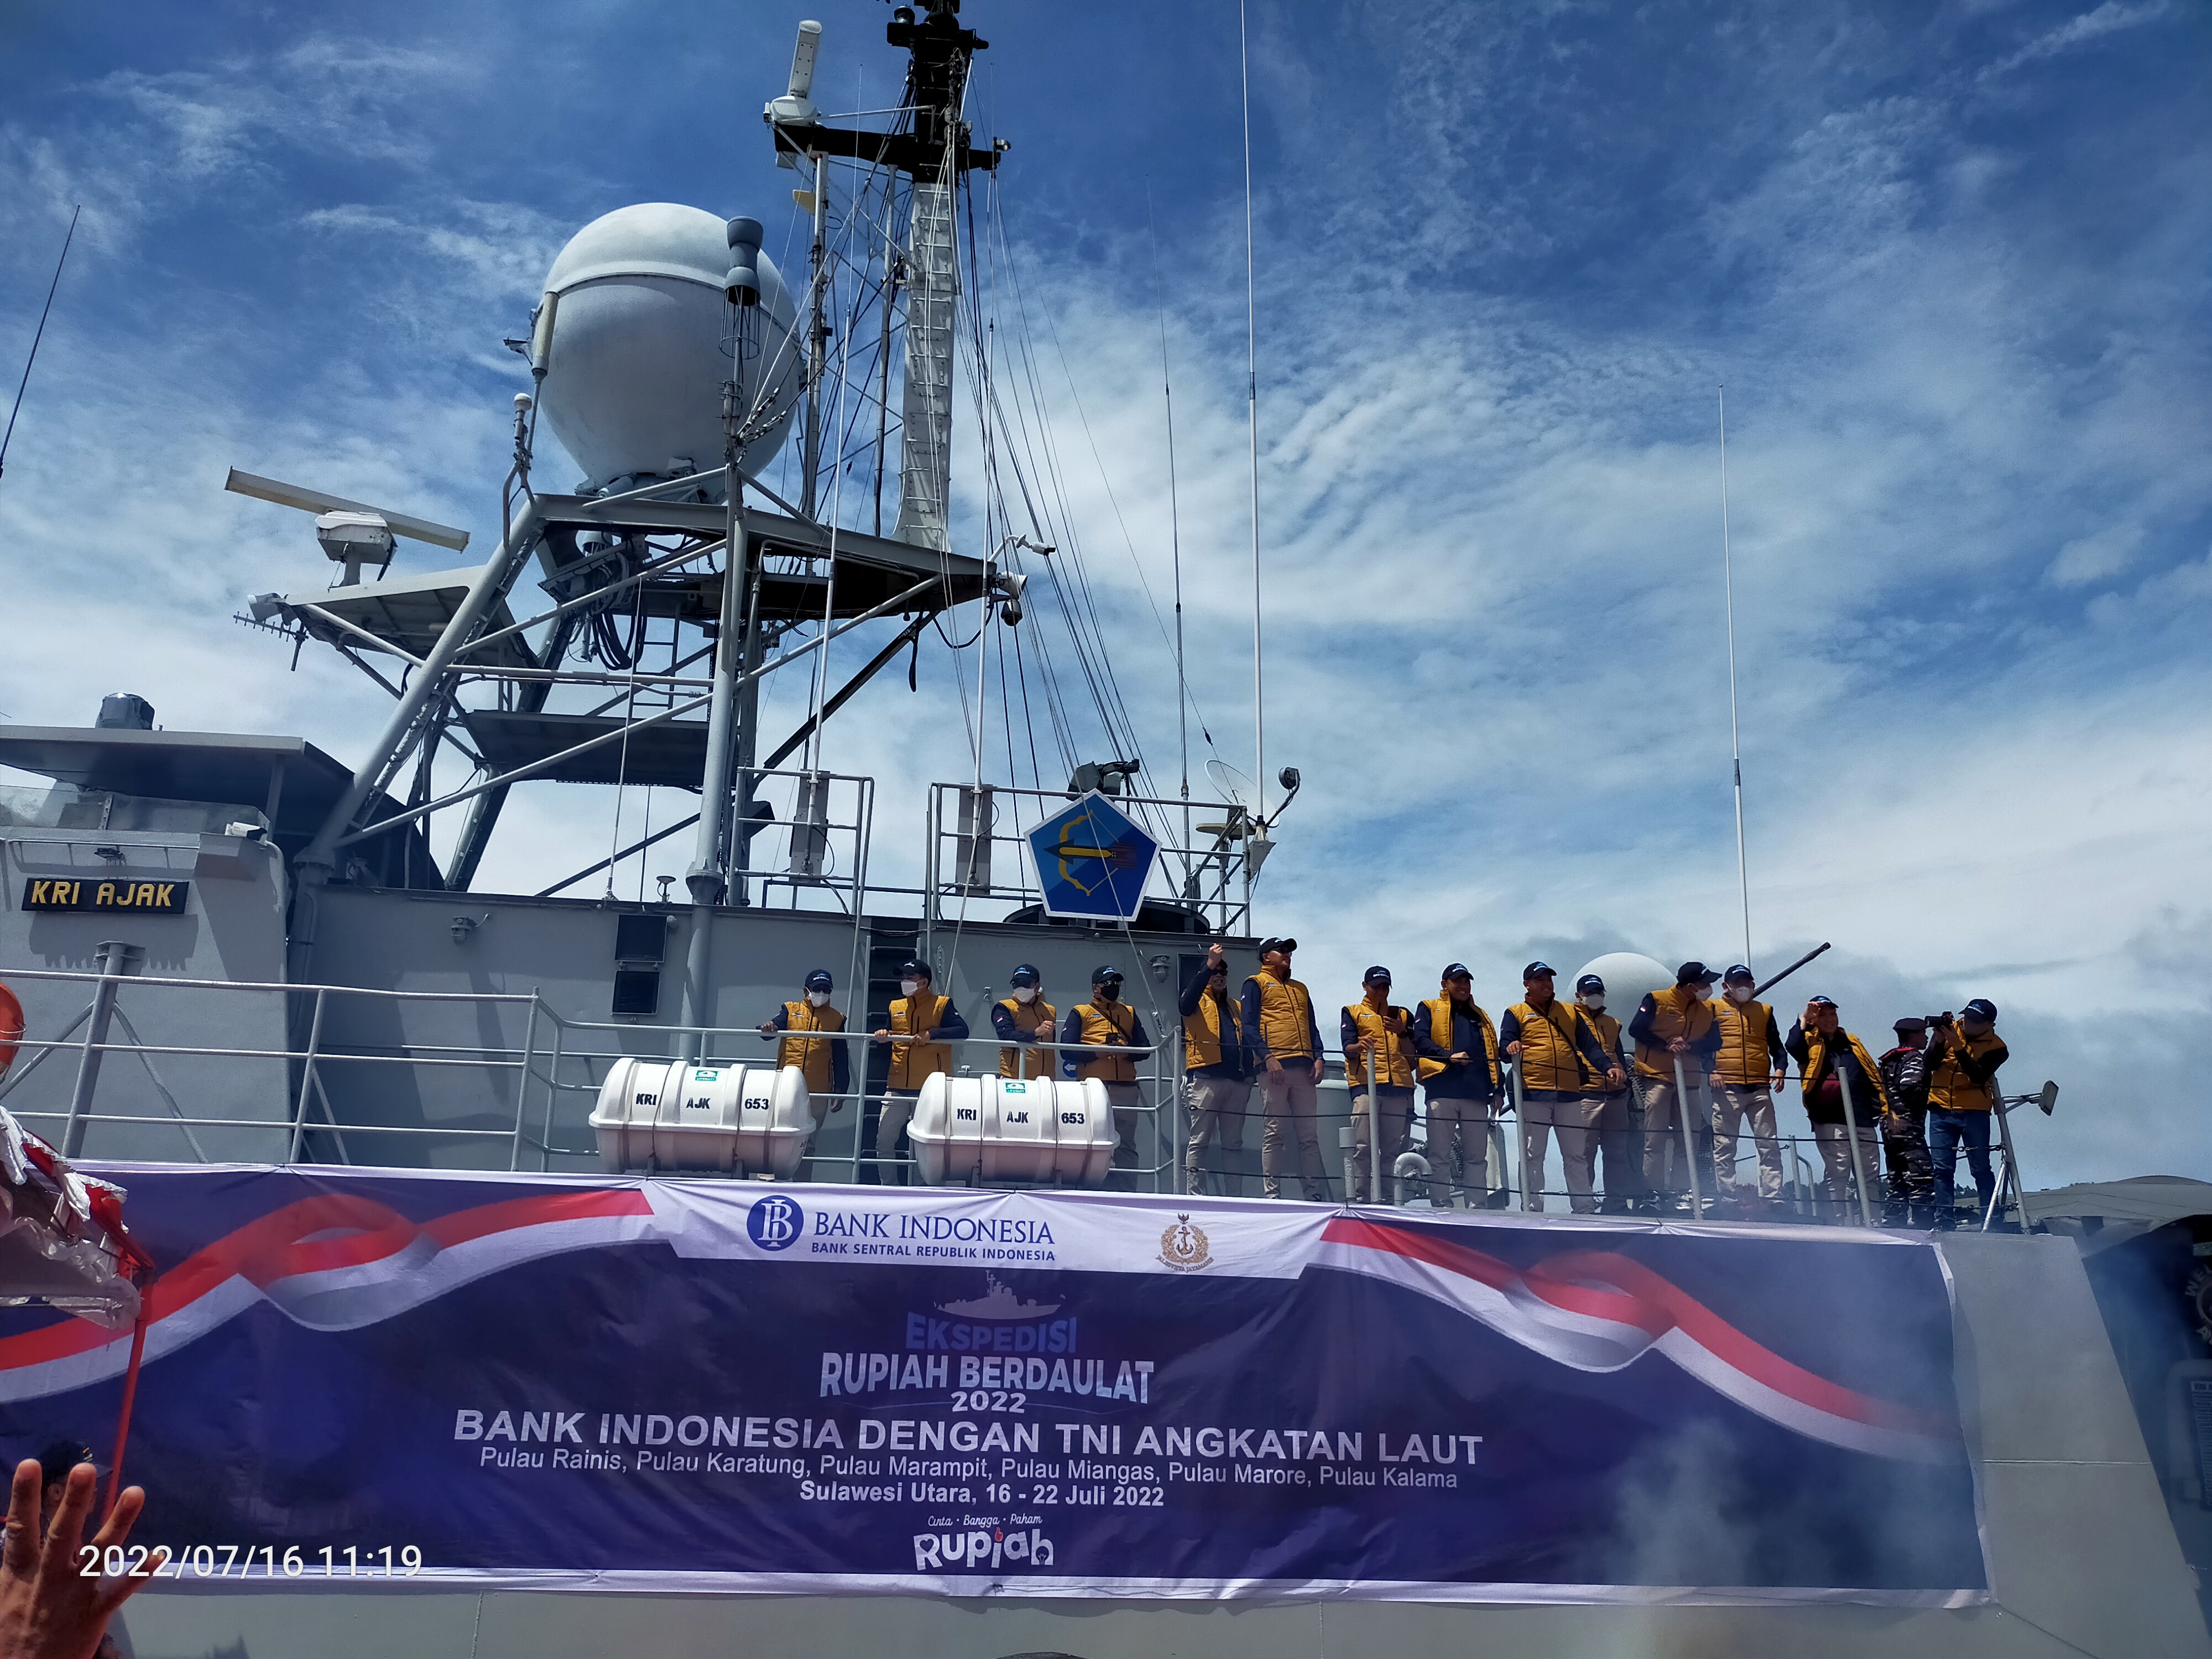 Kunjungi Enam Pulau, Ekspedisi Rupiah Berdaulat BI Sulut dengan Armada KRI AJAK 653